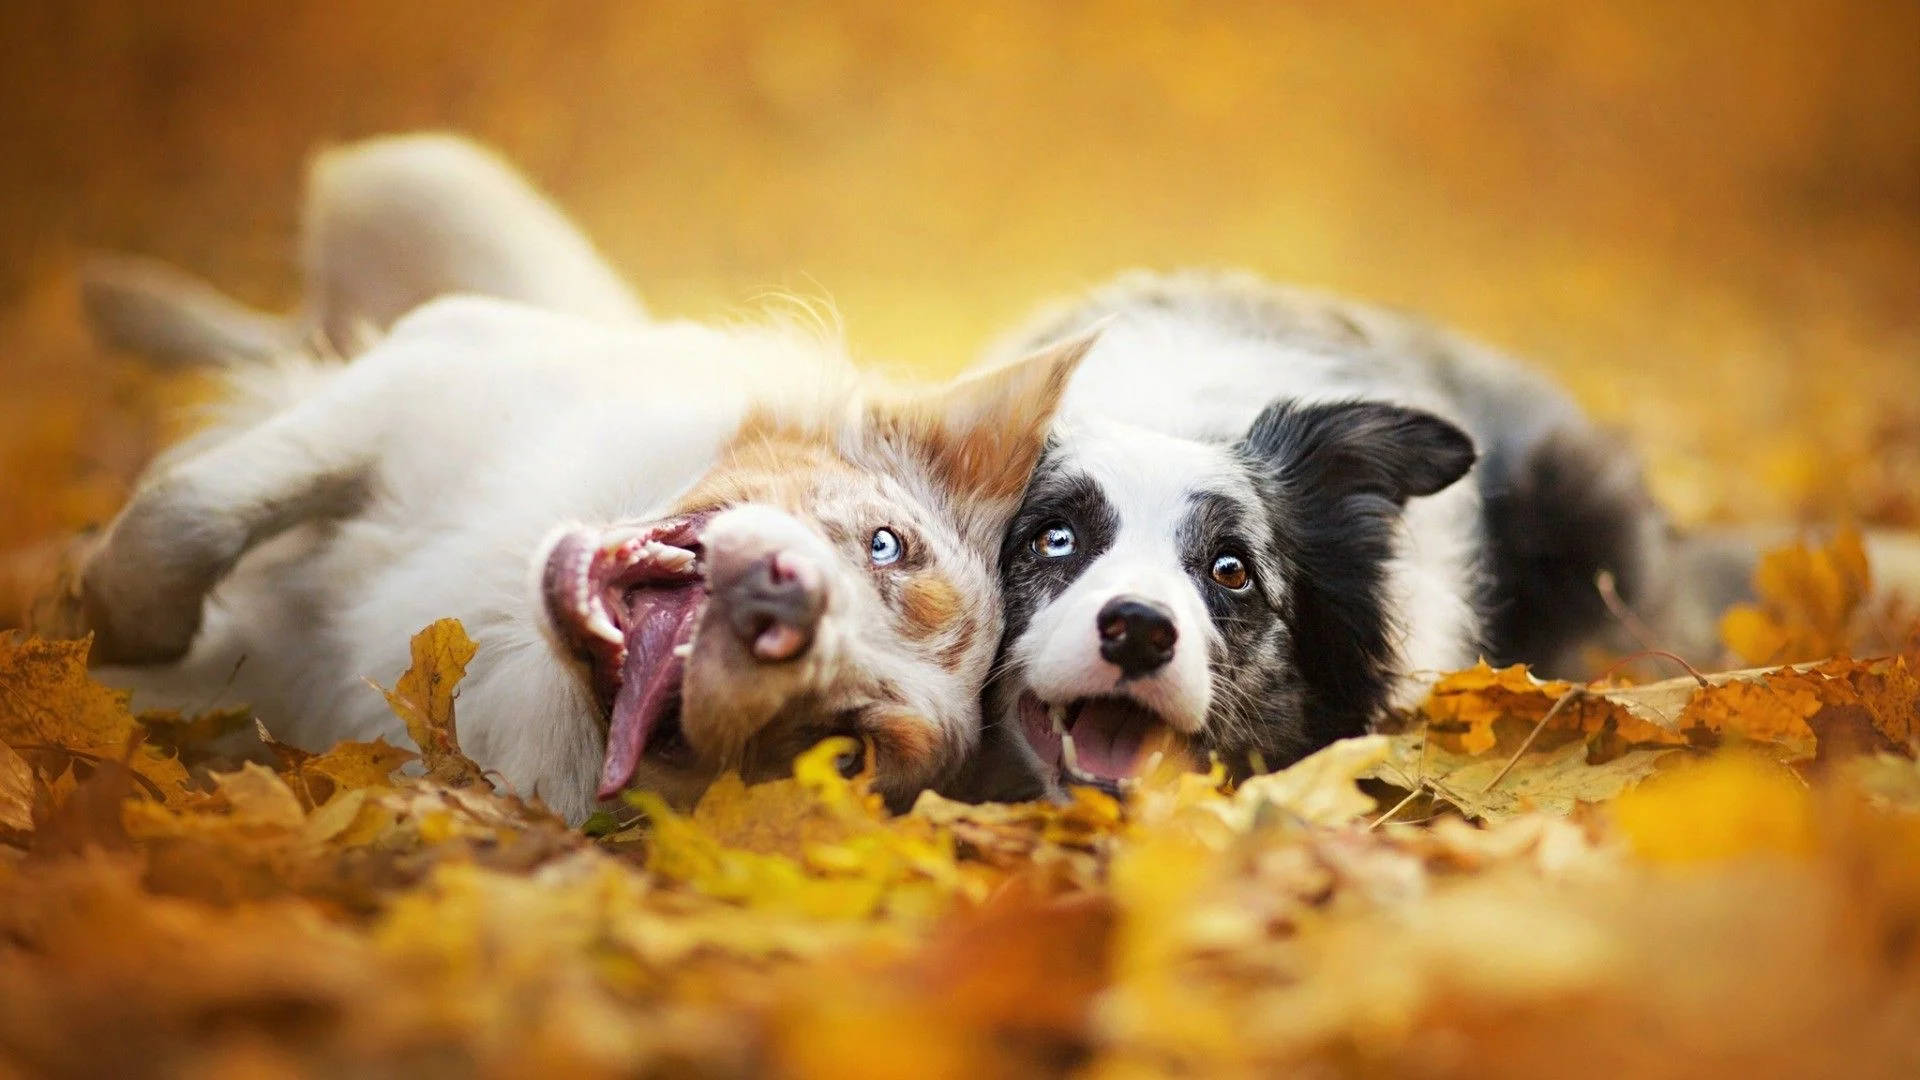 Two Dogs In Fall Season Wallpaper